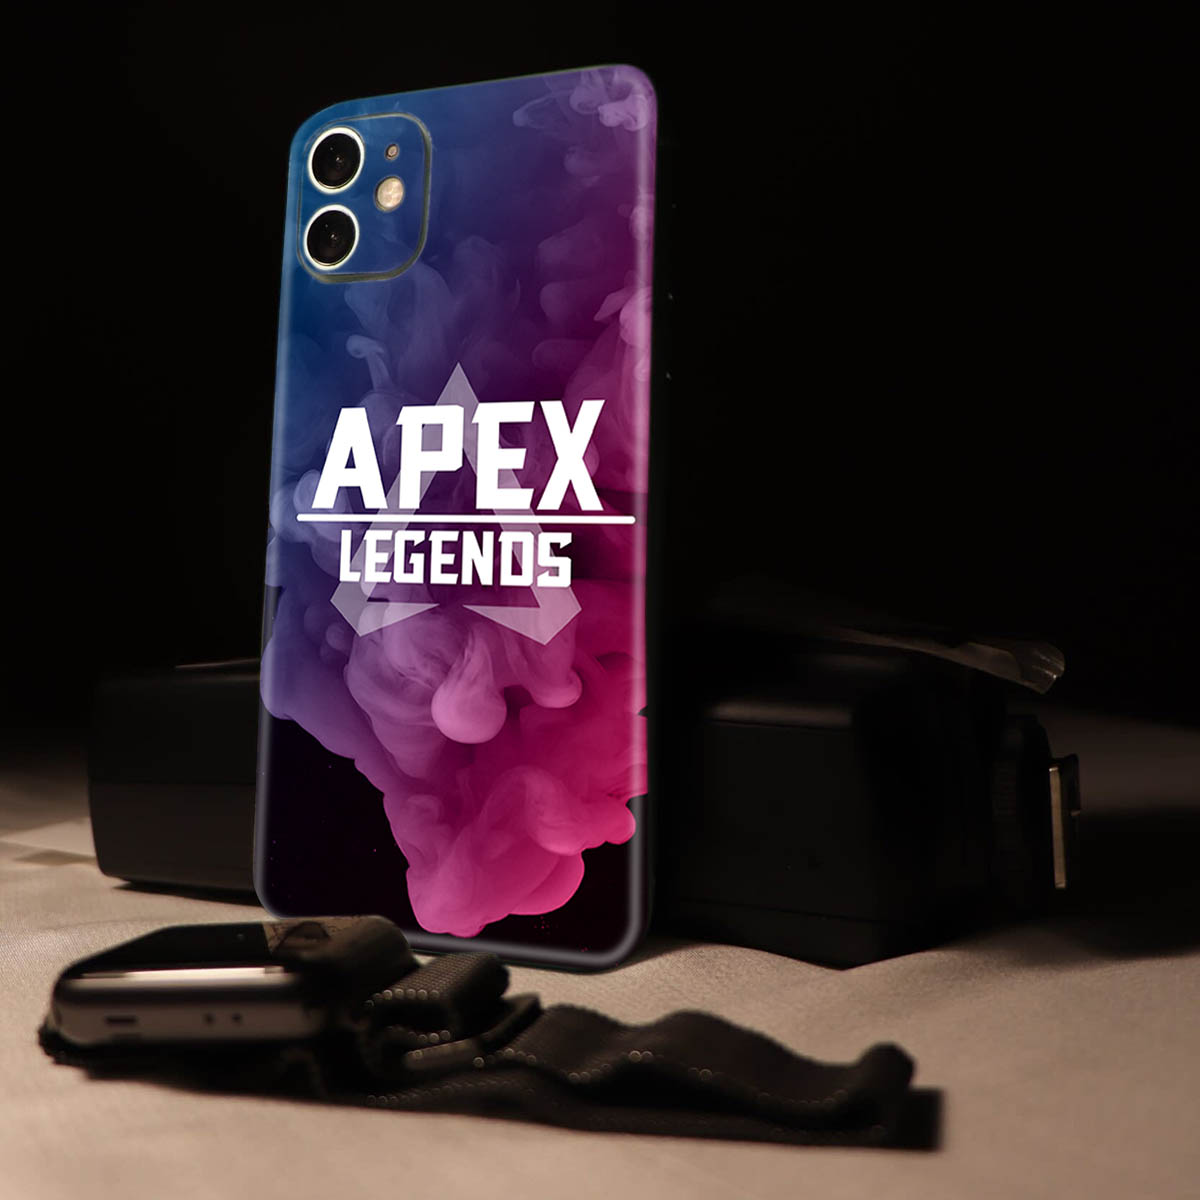 اسکین موبایل طرح Apex Legends 001